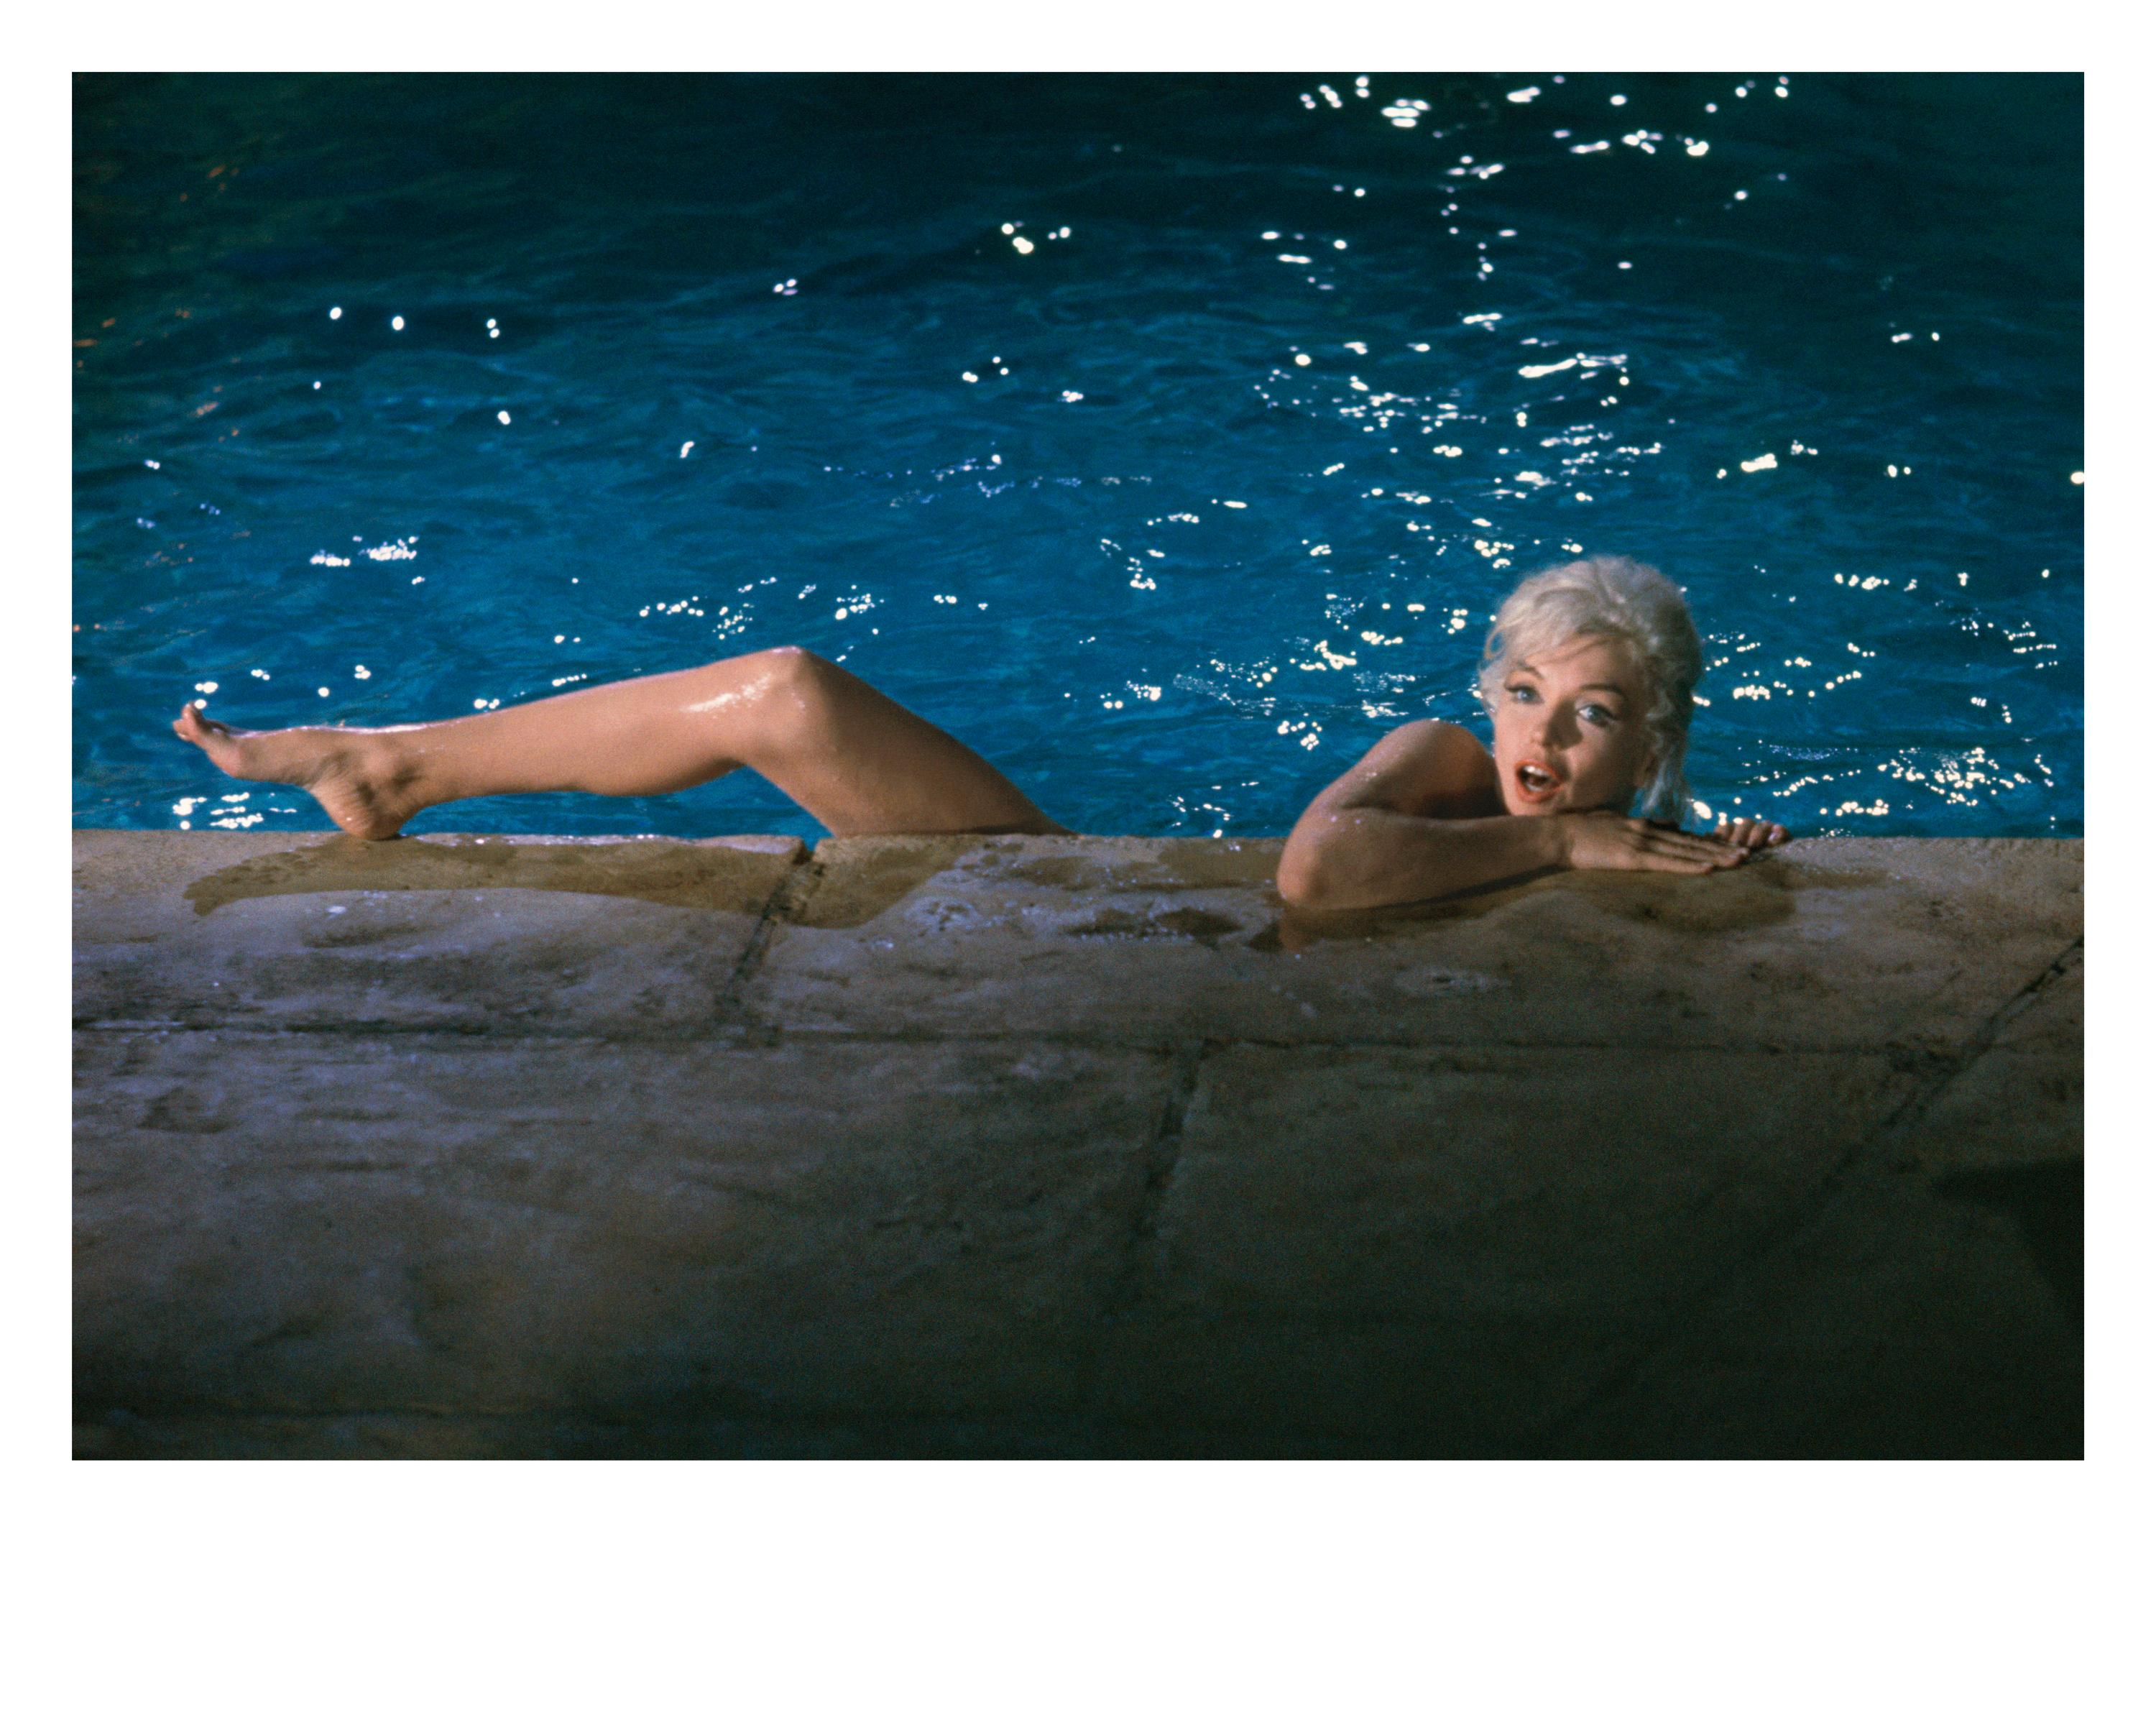 Marilyn Monroe, 1962" des amerikanischen Fotografen Lawrence Schiller. Digitales Pigment, Ausgabe von 35. Bild: 13 x 18,5 in. / Papier: 16 x 20 in. Dieses Farbfoto stammt vom Set des Films "Something's Got to Give" und zeigt Marilyn Monroe in einem